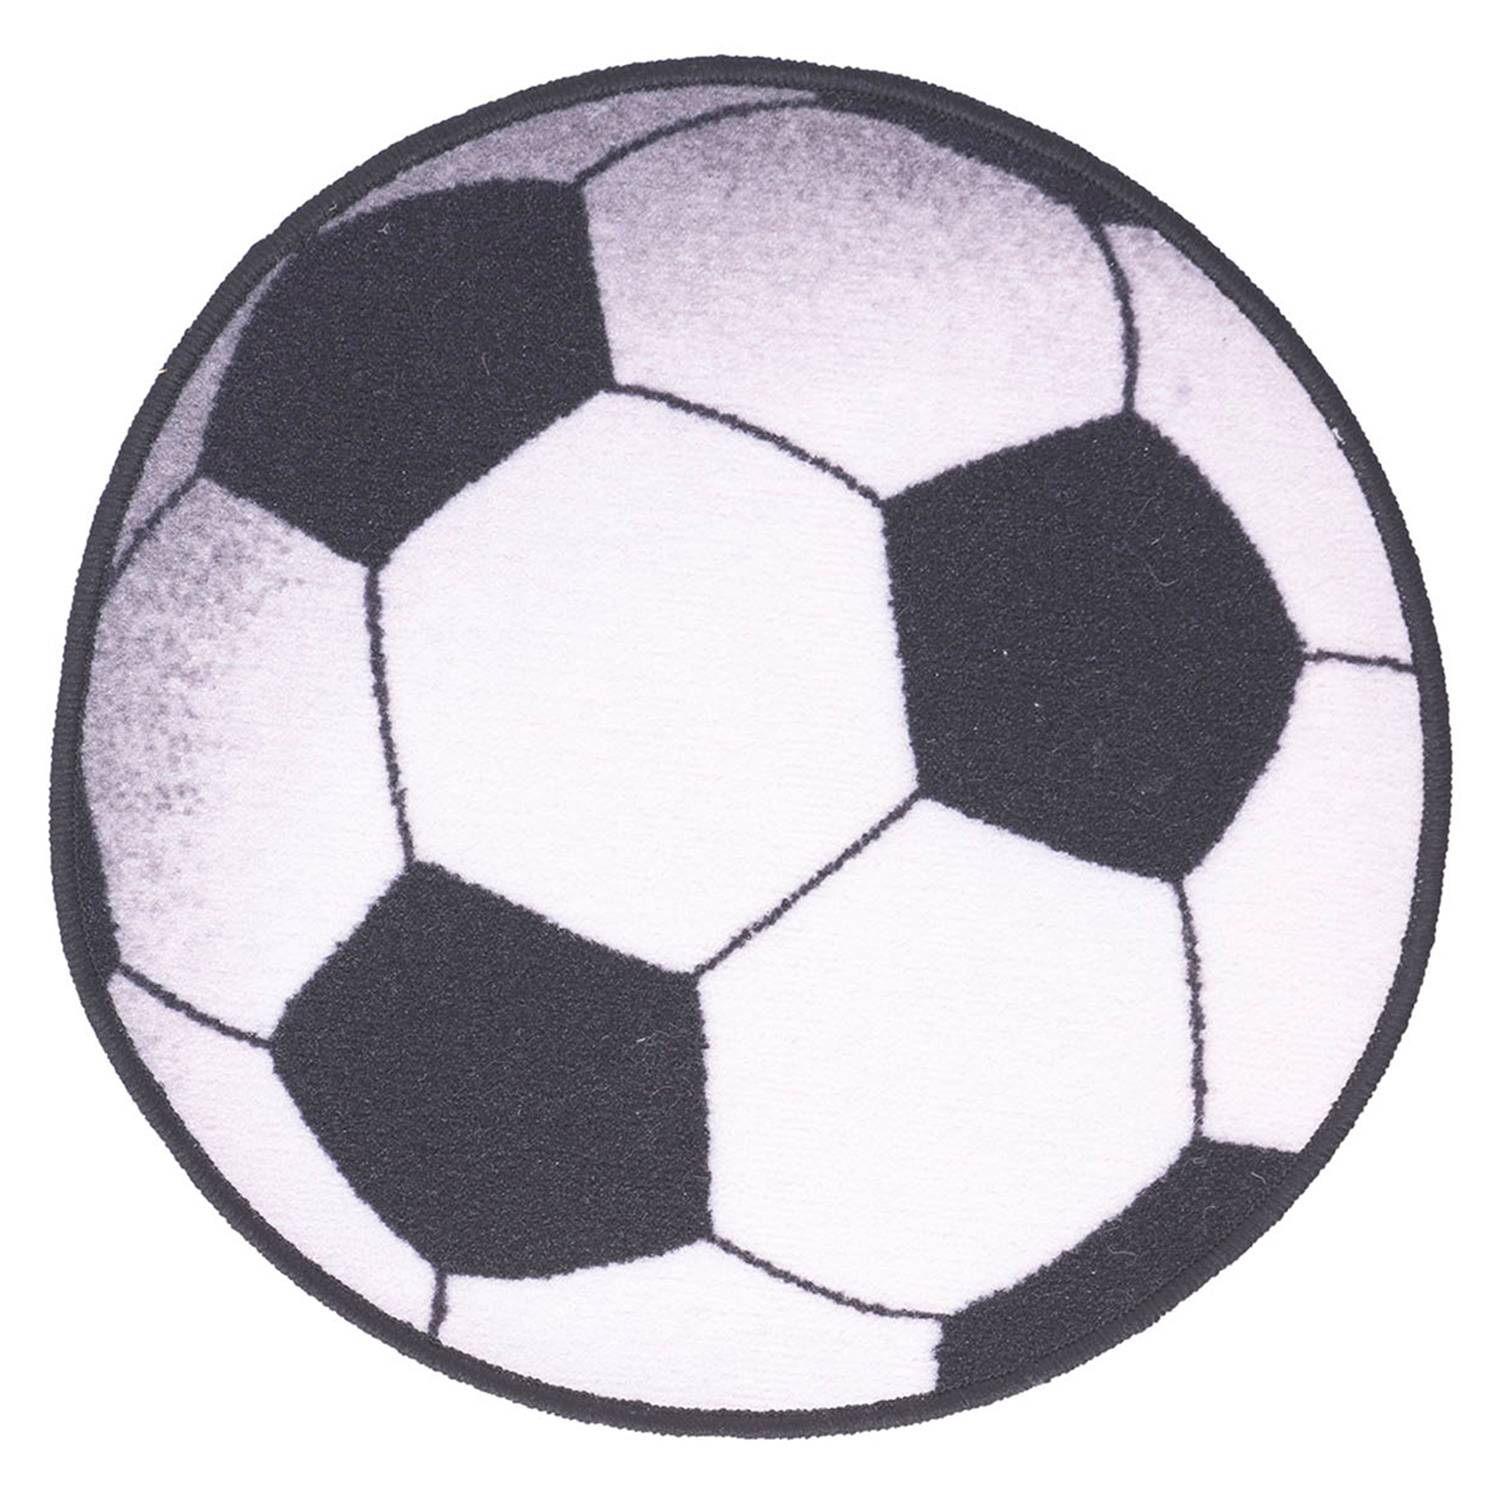 DIB Alfombra Sport Fútbol Dib